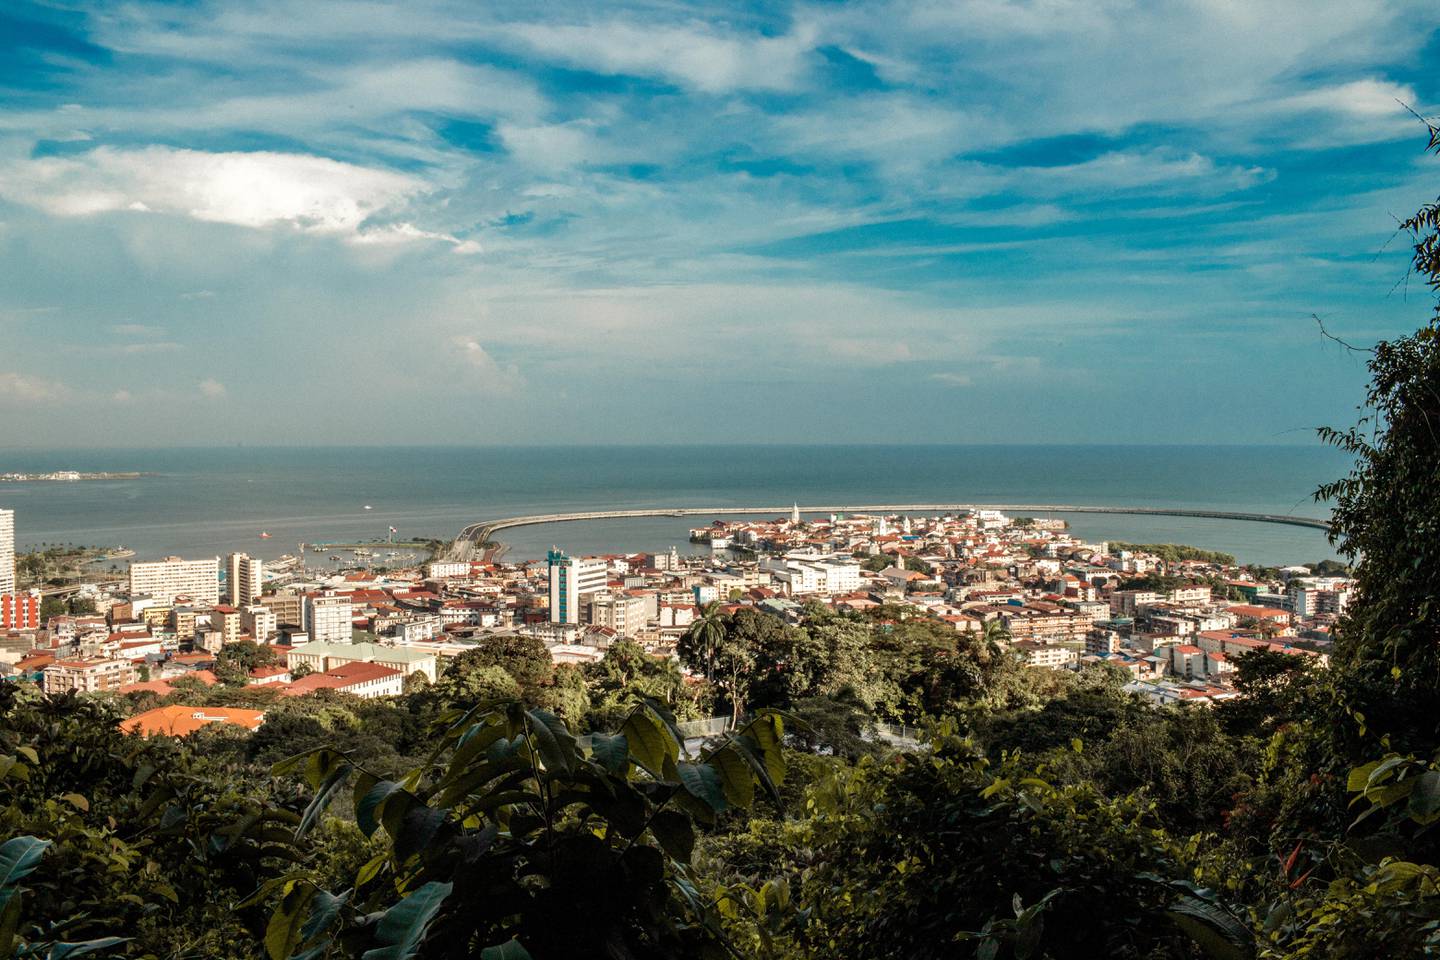 Ciudad de Panamá, un contraste de bosques y rascacielos.  Para la CAF el mercado del carbono ofrece una oportunidad histórica para que la región se consolide como un actor imprescindible en la agenda climática global, gracias a su capacidad única para ofrecer soluciones basadas en la naturaleza.